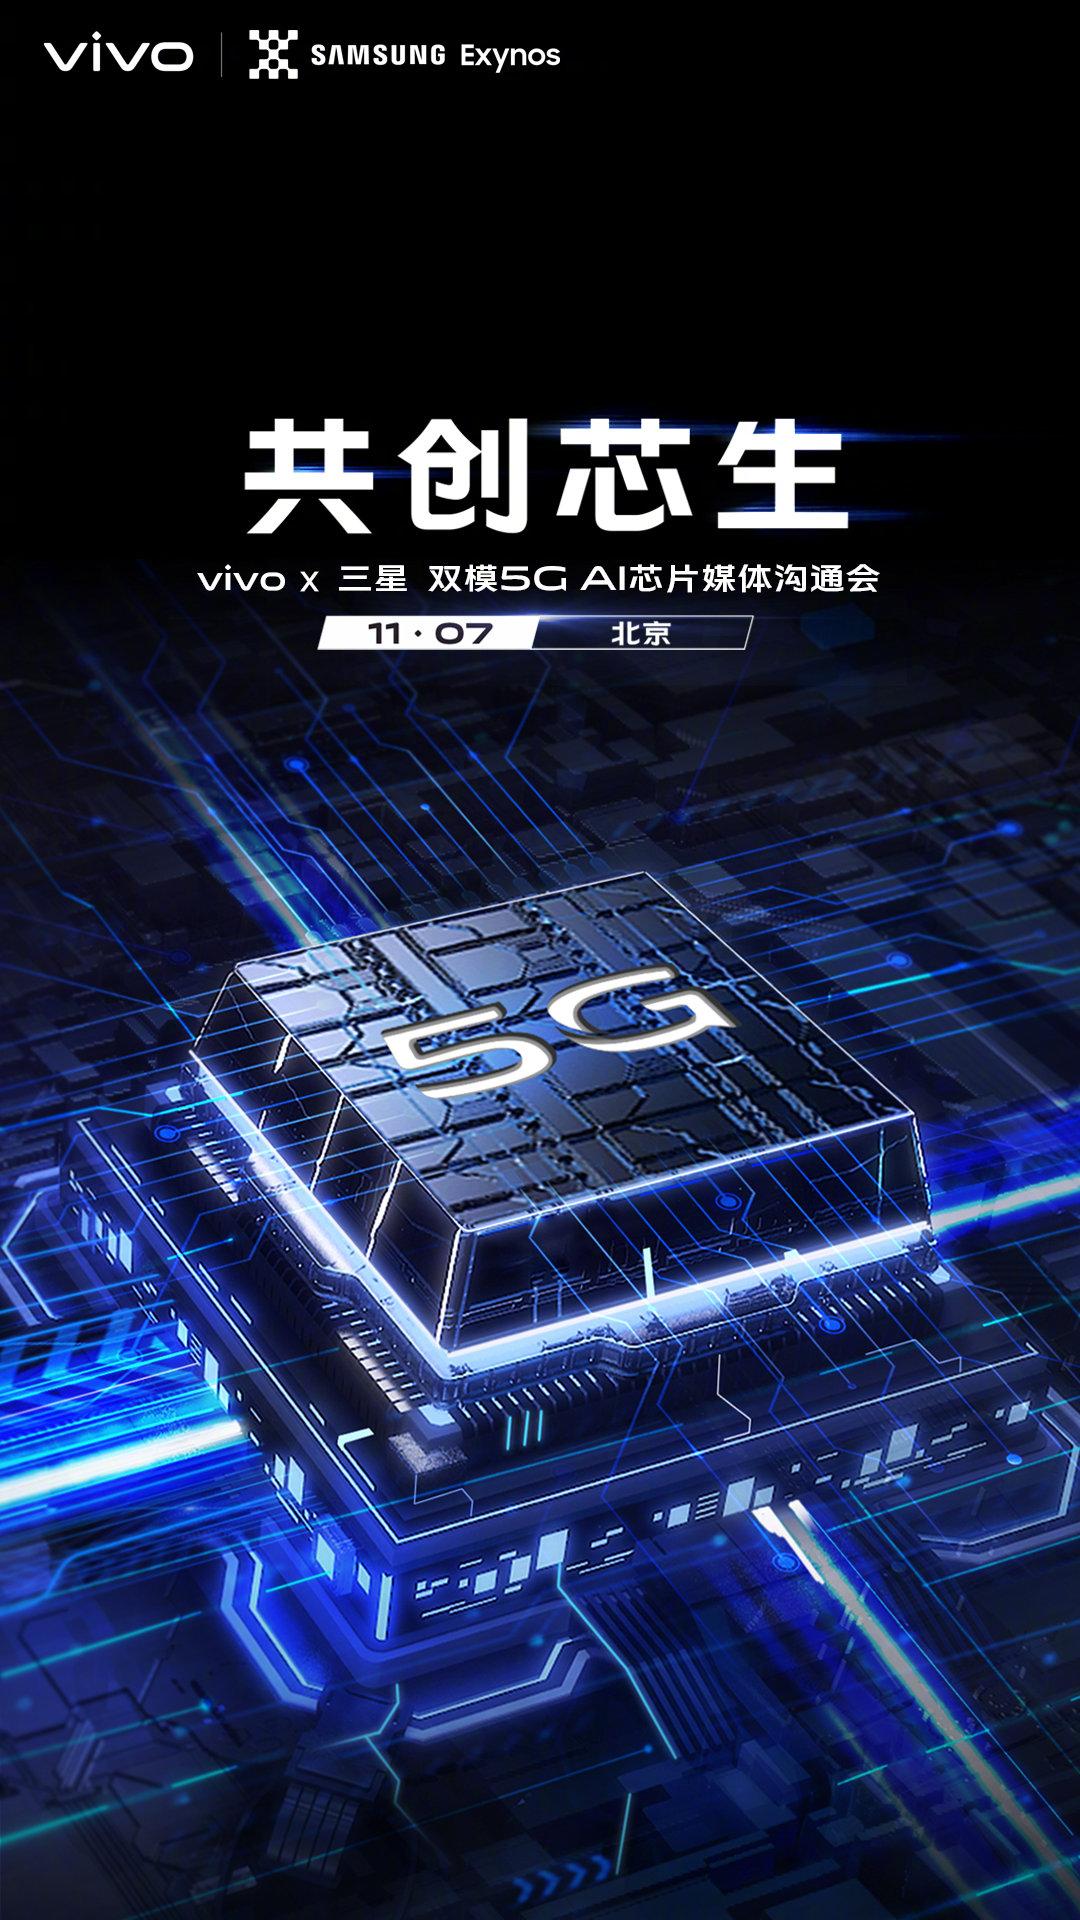 Vivo và Samsung sẽ tổ chức sự kiện 5G vào hôm nay với chiếc smartphone vivo X30 chạy Exynos